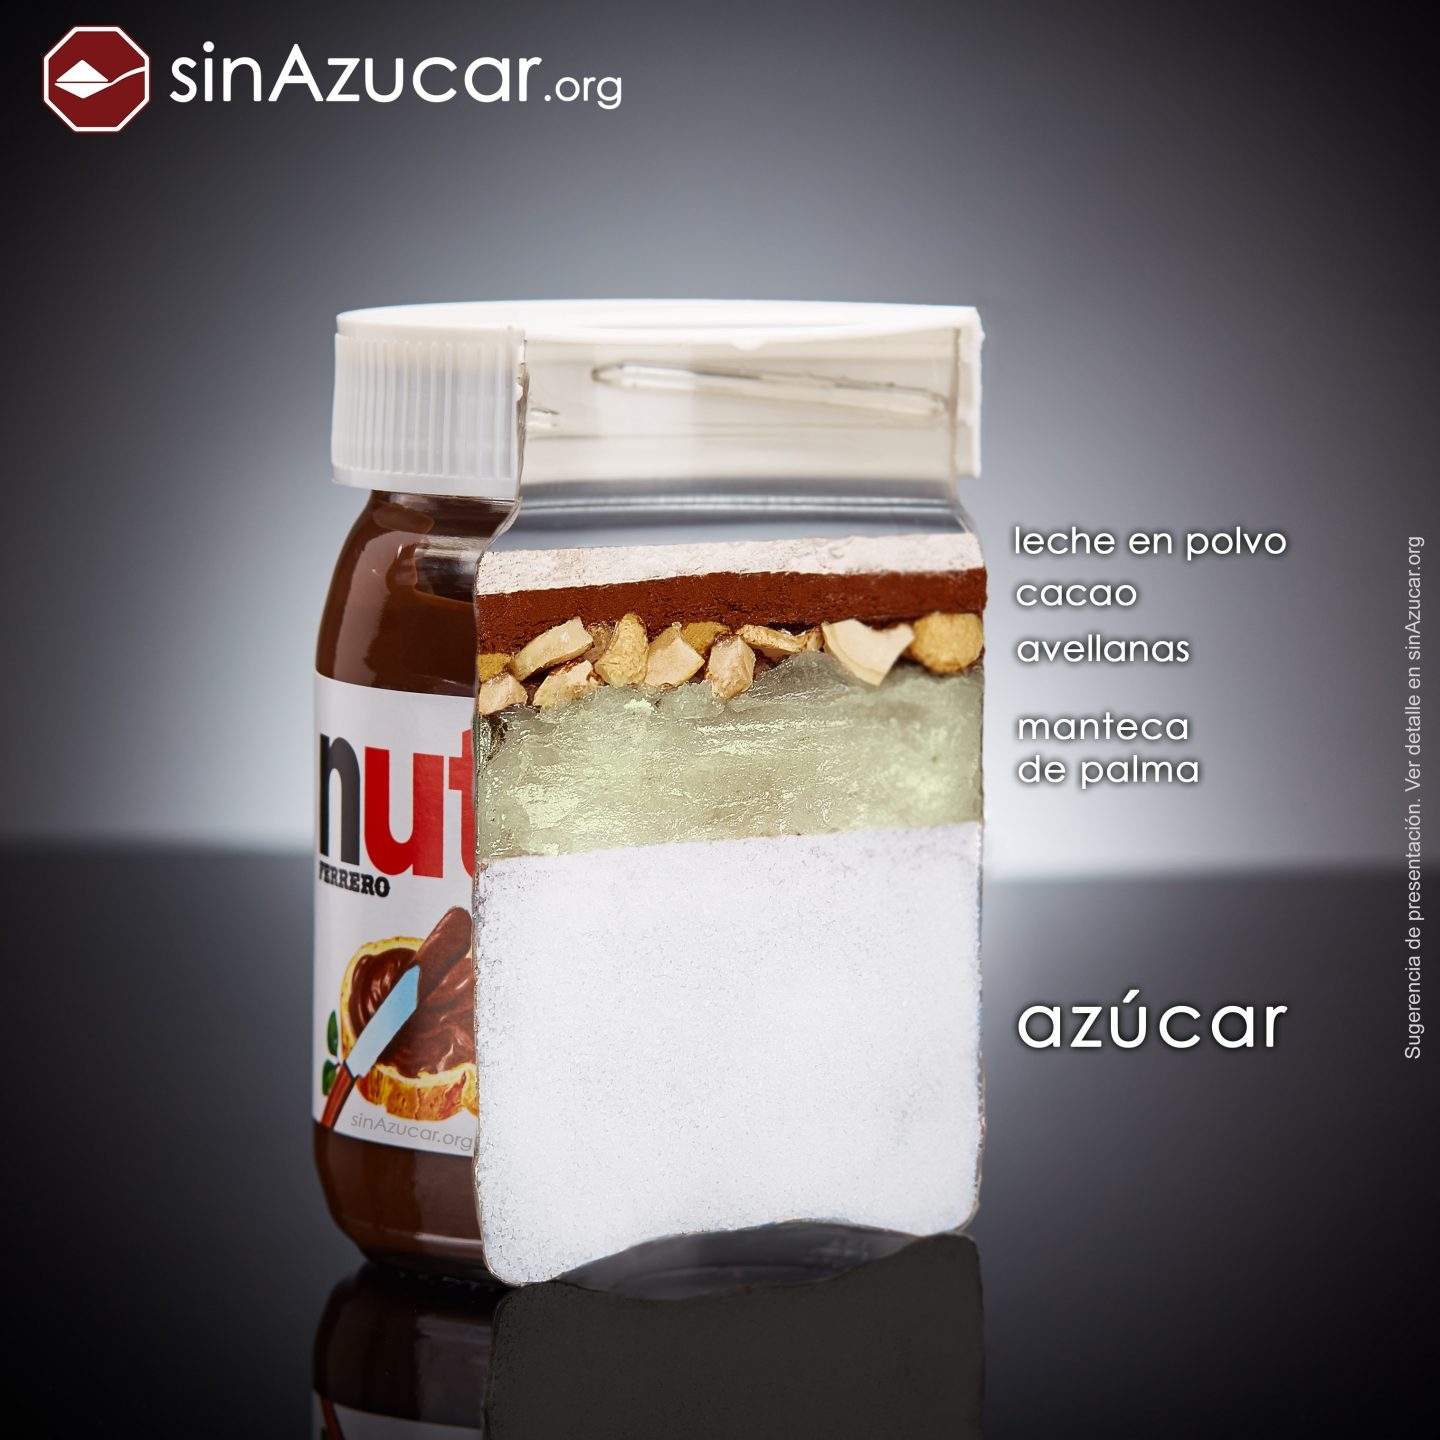 Cantidad de azúcar en Nutella recogida por la asociación sinazucar.org y que ahora ha sido aumentada en la nueva receta de la compañía.